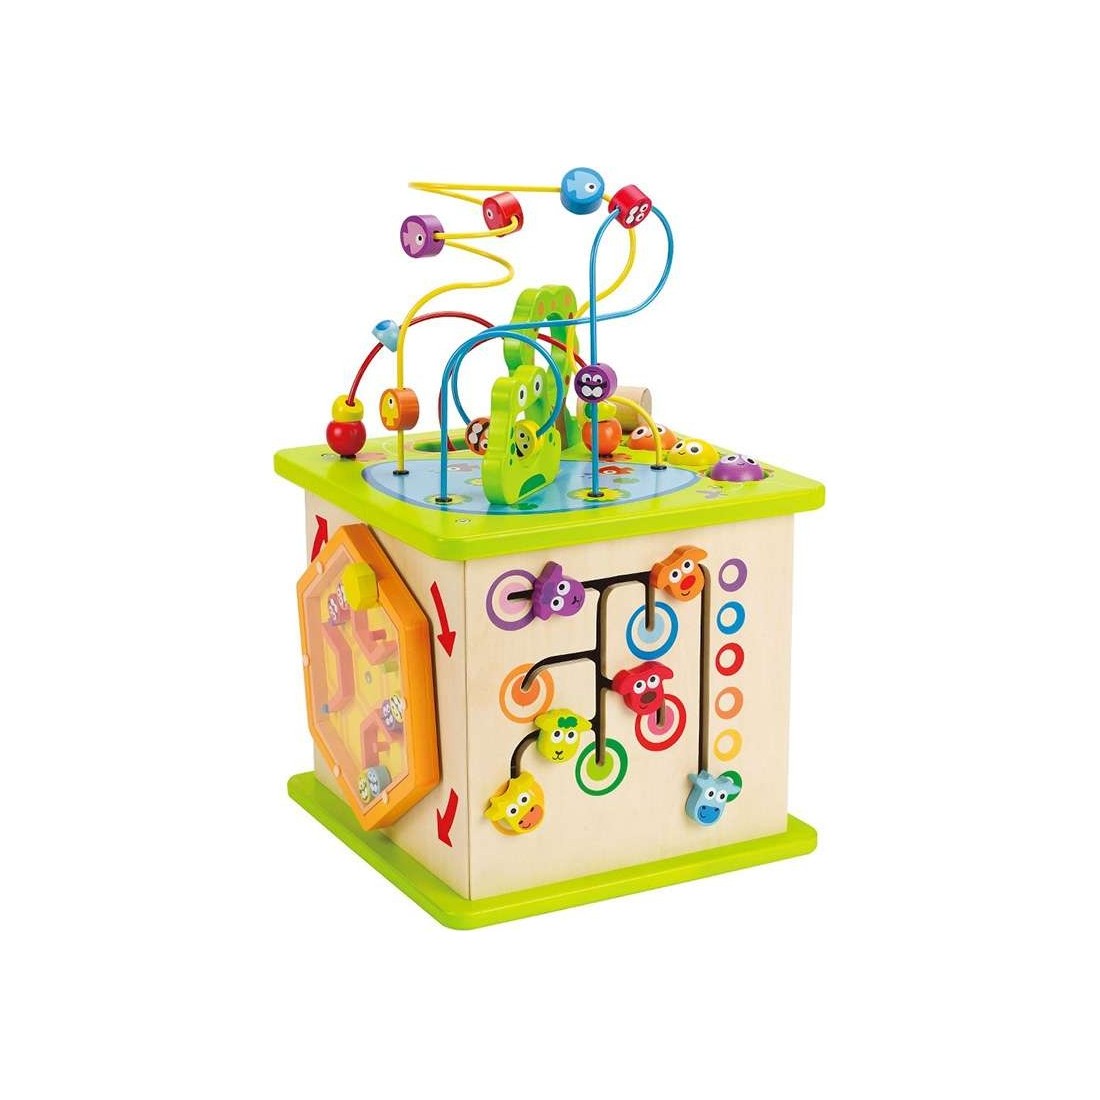 Cube d'activités pour bébé - Jeu d'éveil - Hape Toys